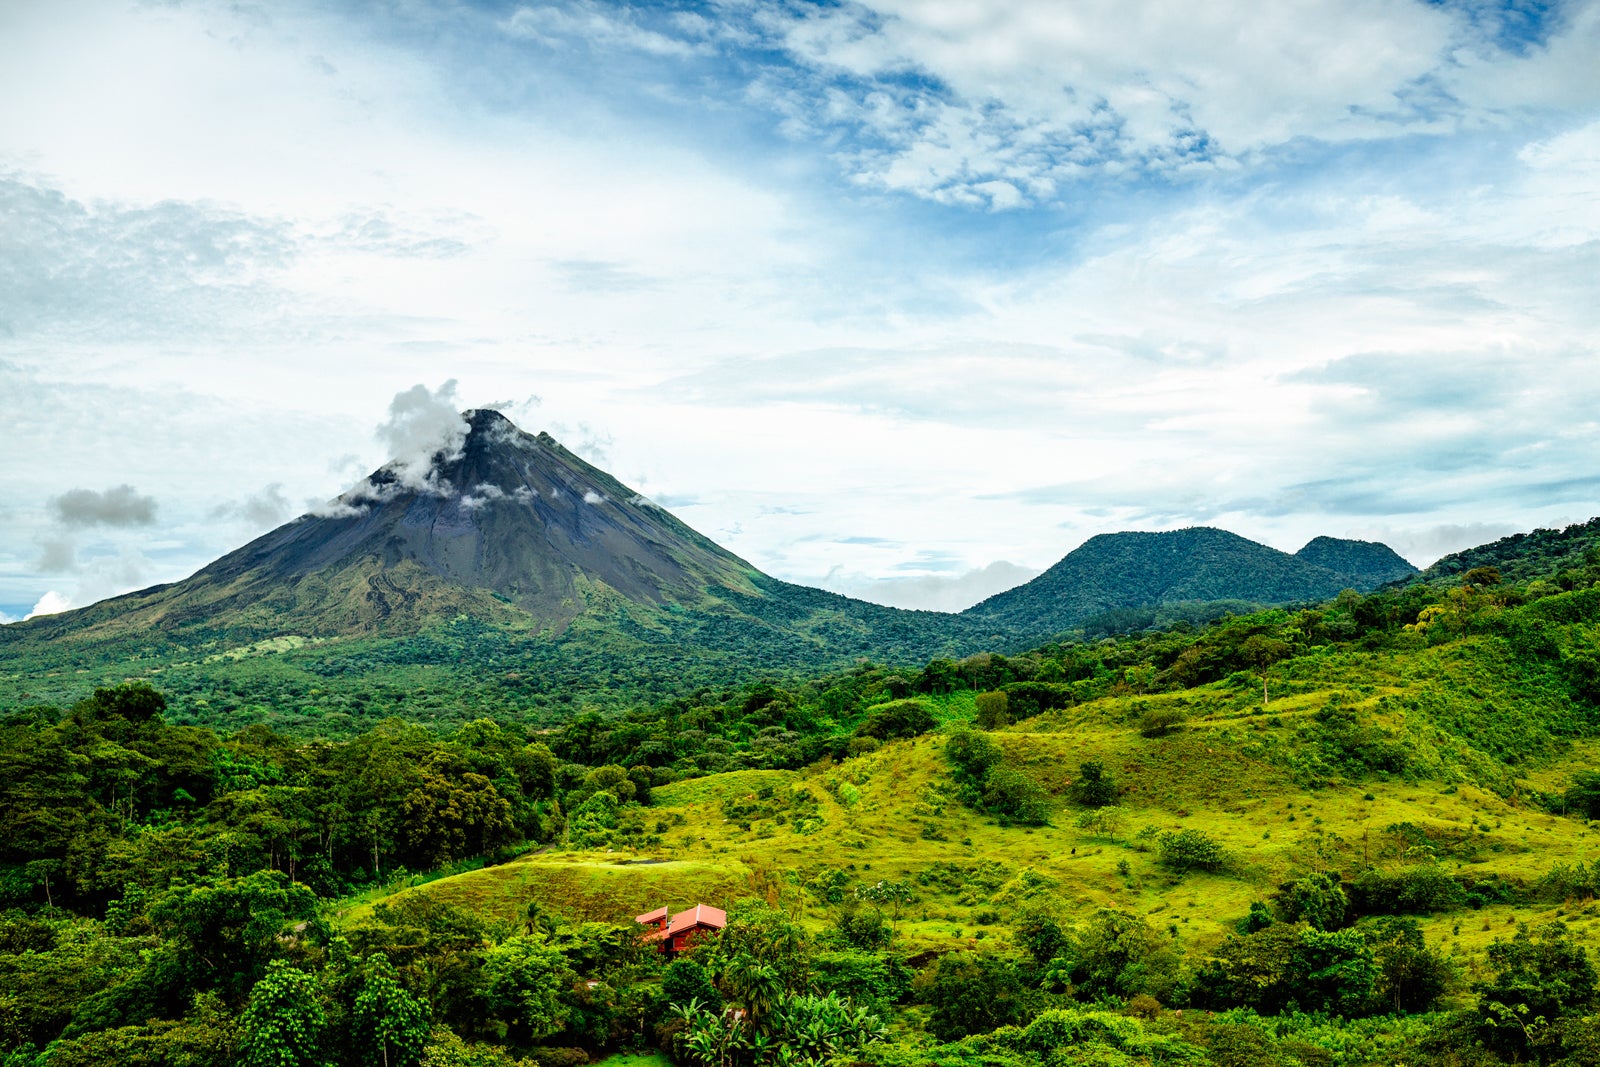 Costa Rica, Views of the Arenal volcano and Cerro Chato